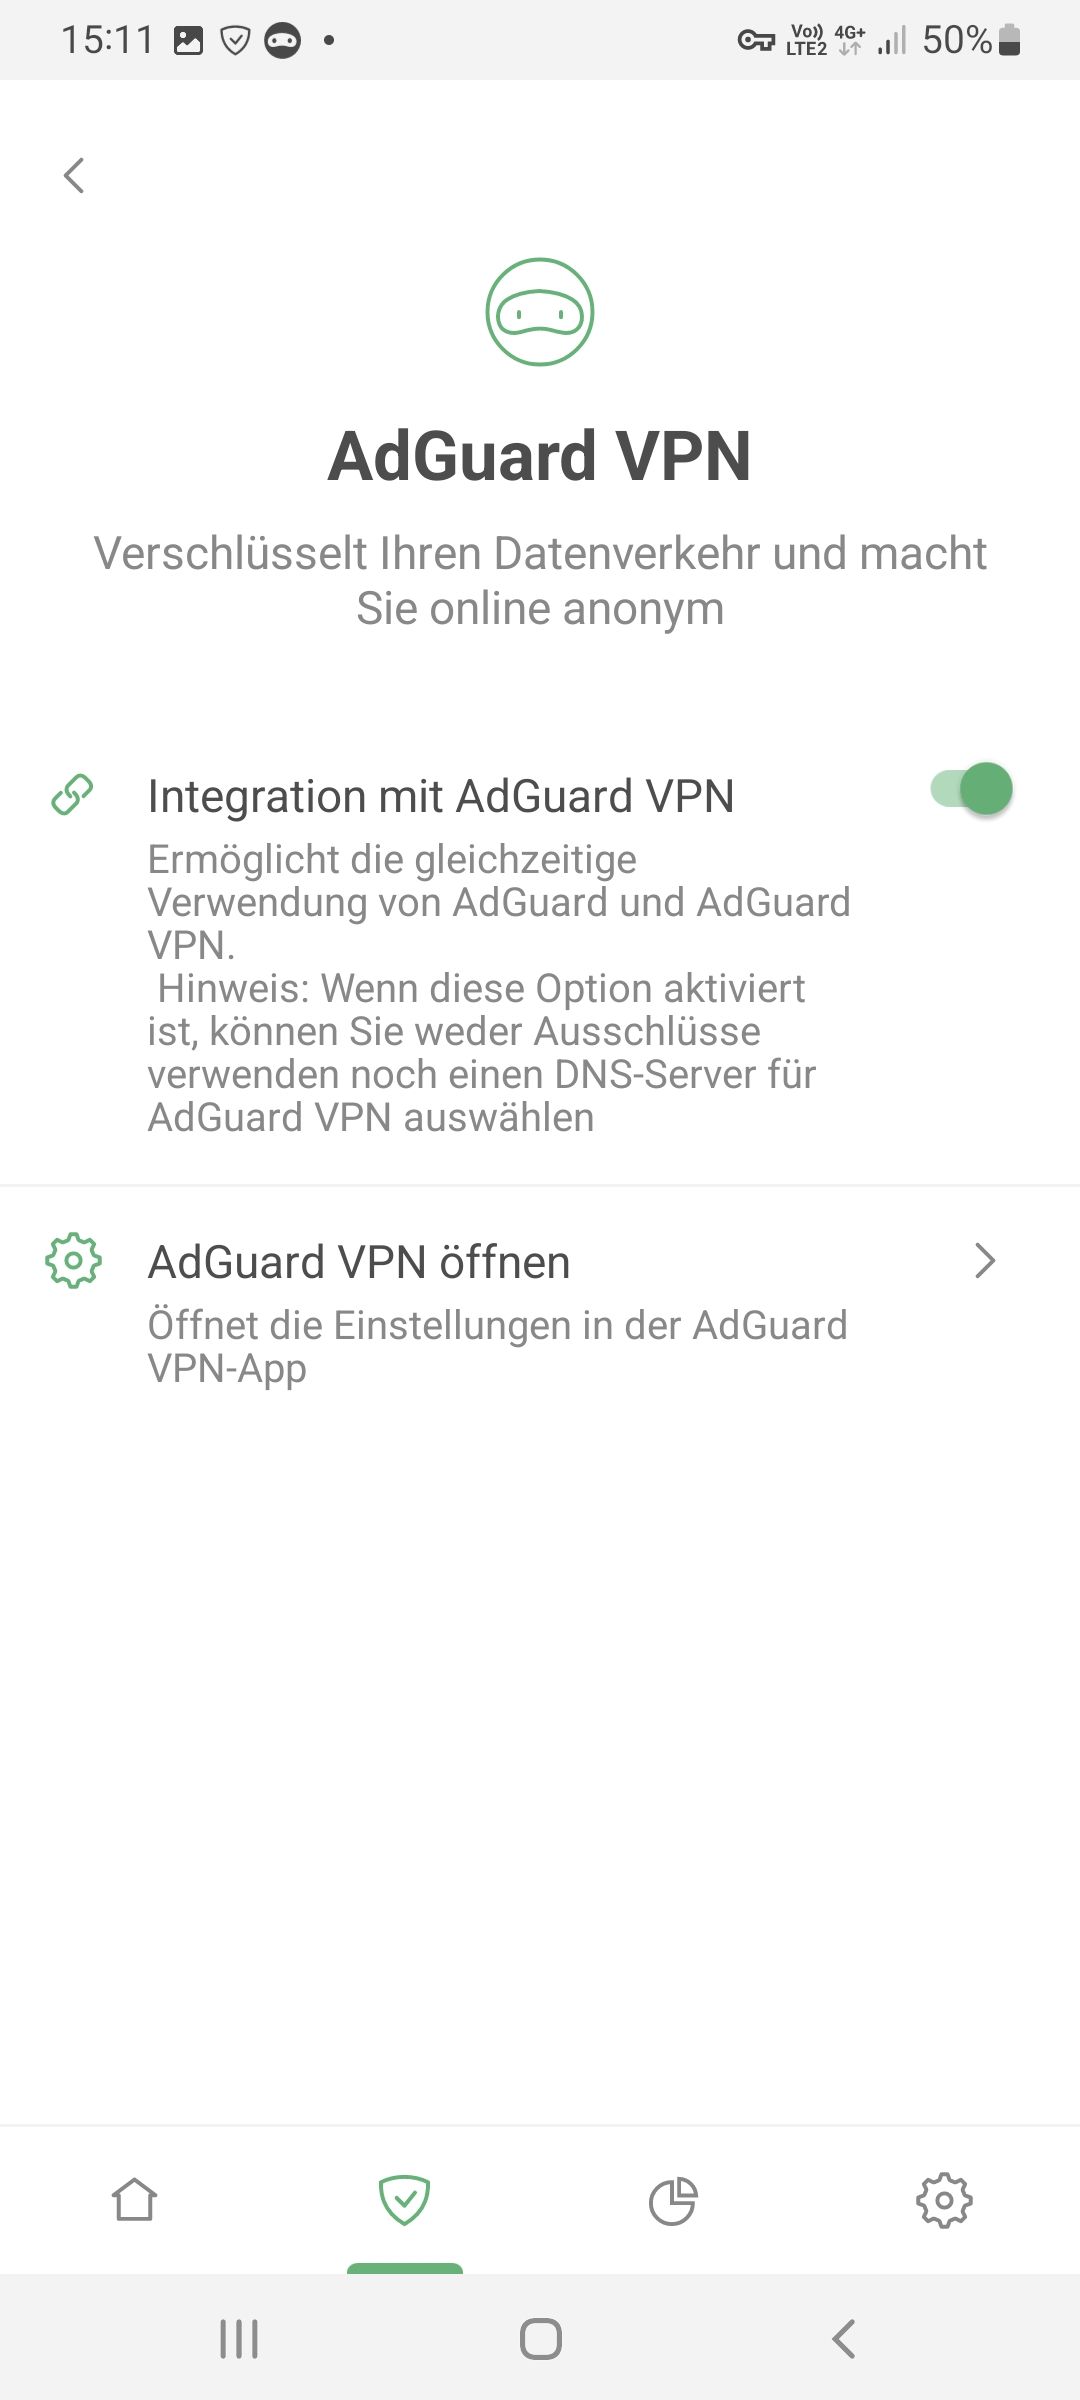 Integration mit AdGuard VPN